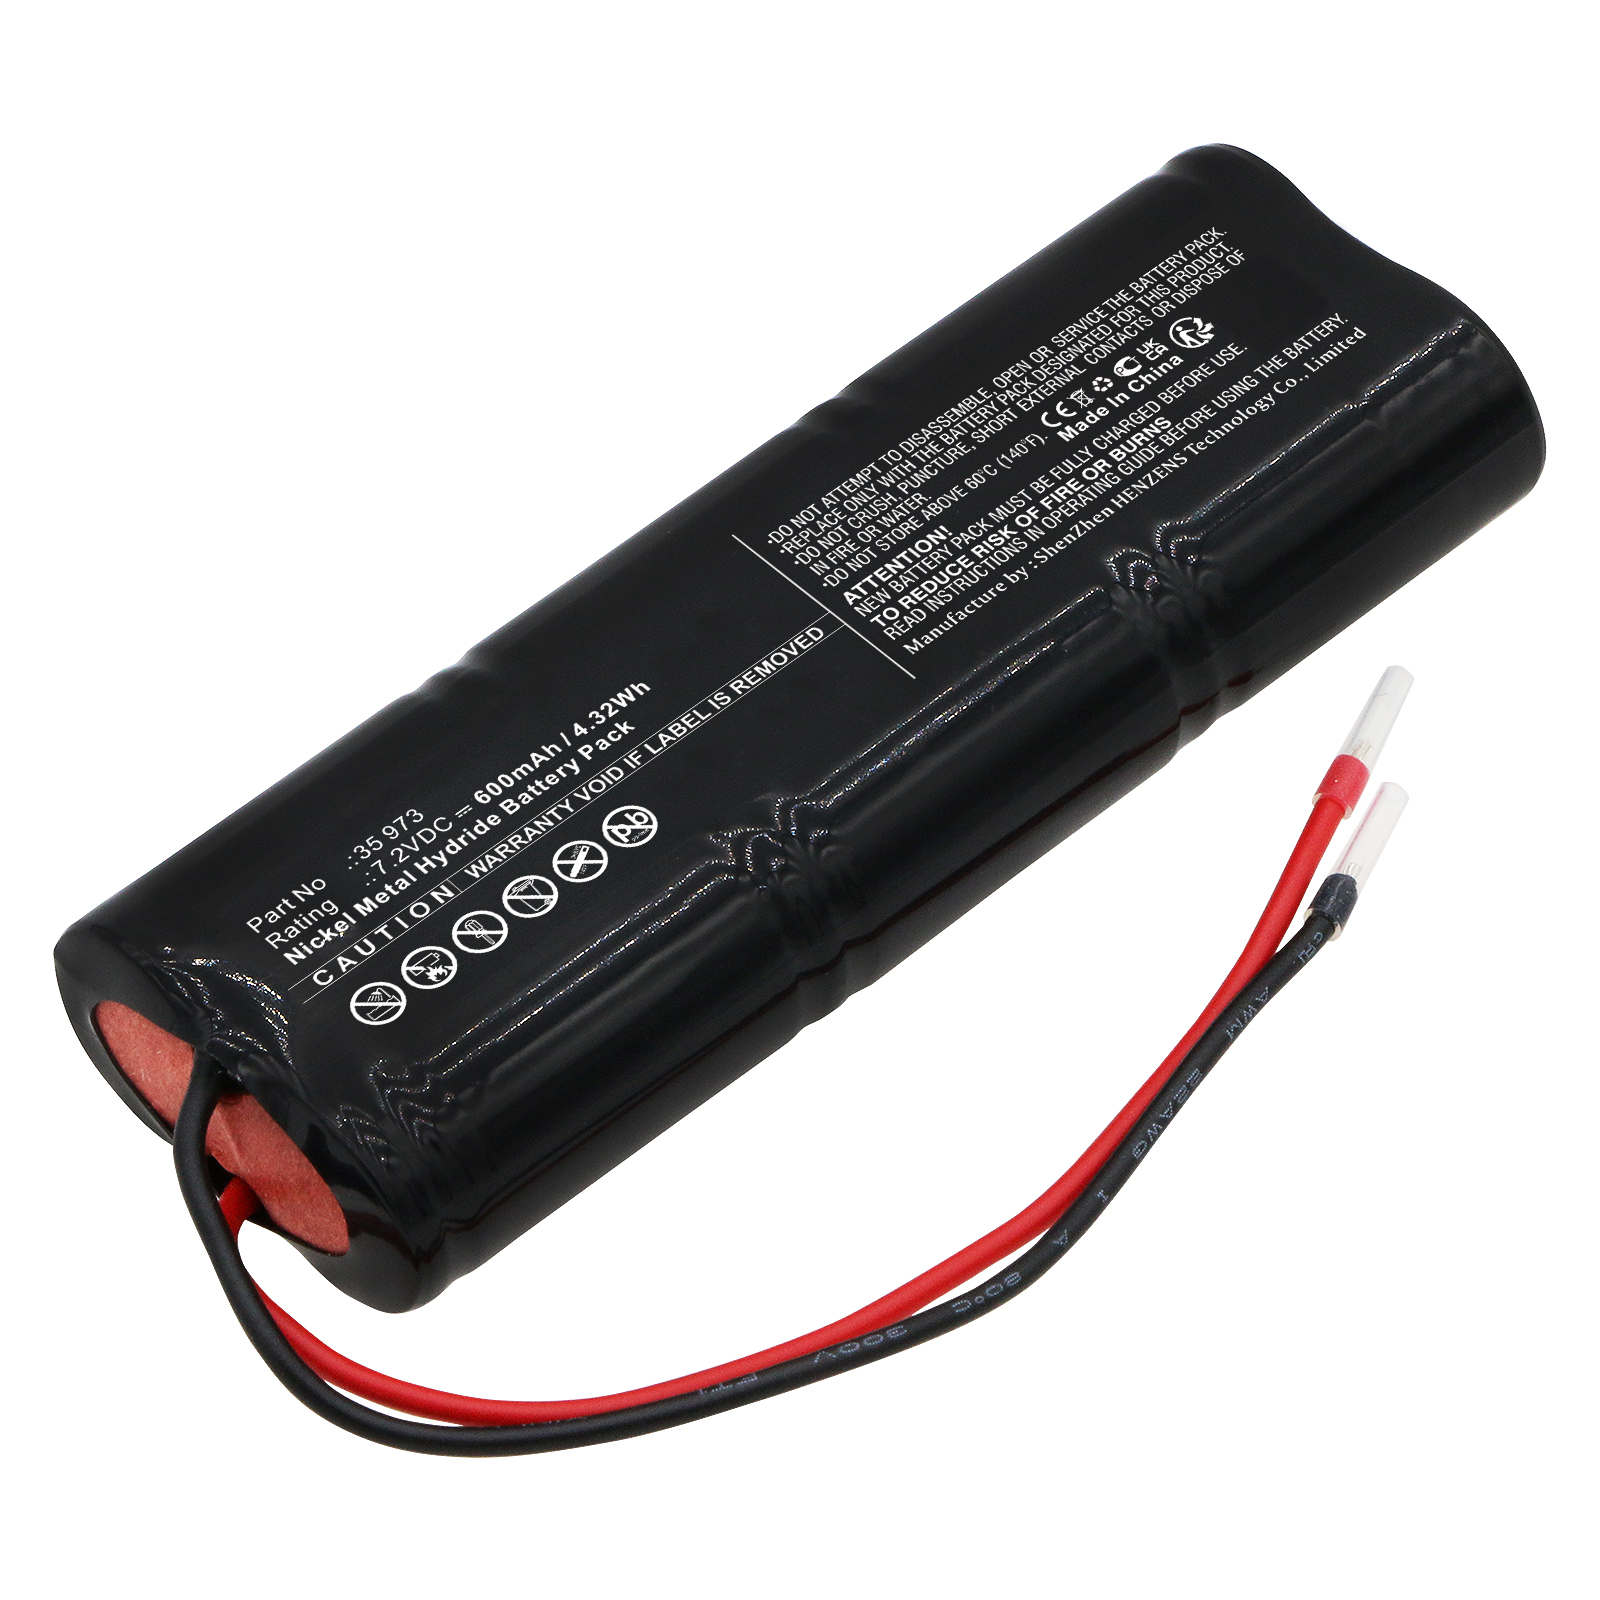 Batteries for TELENOTEmergency Lighting